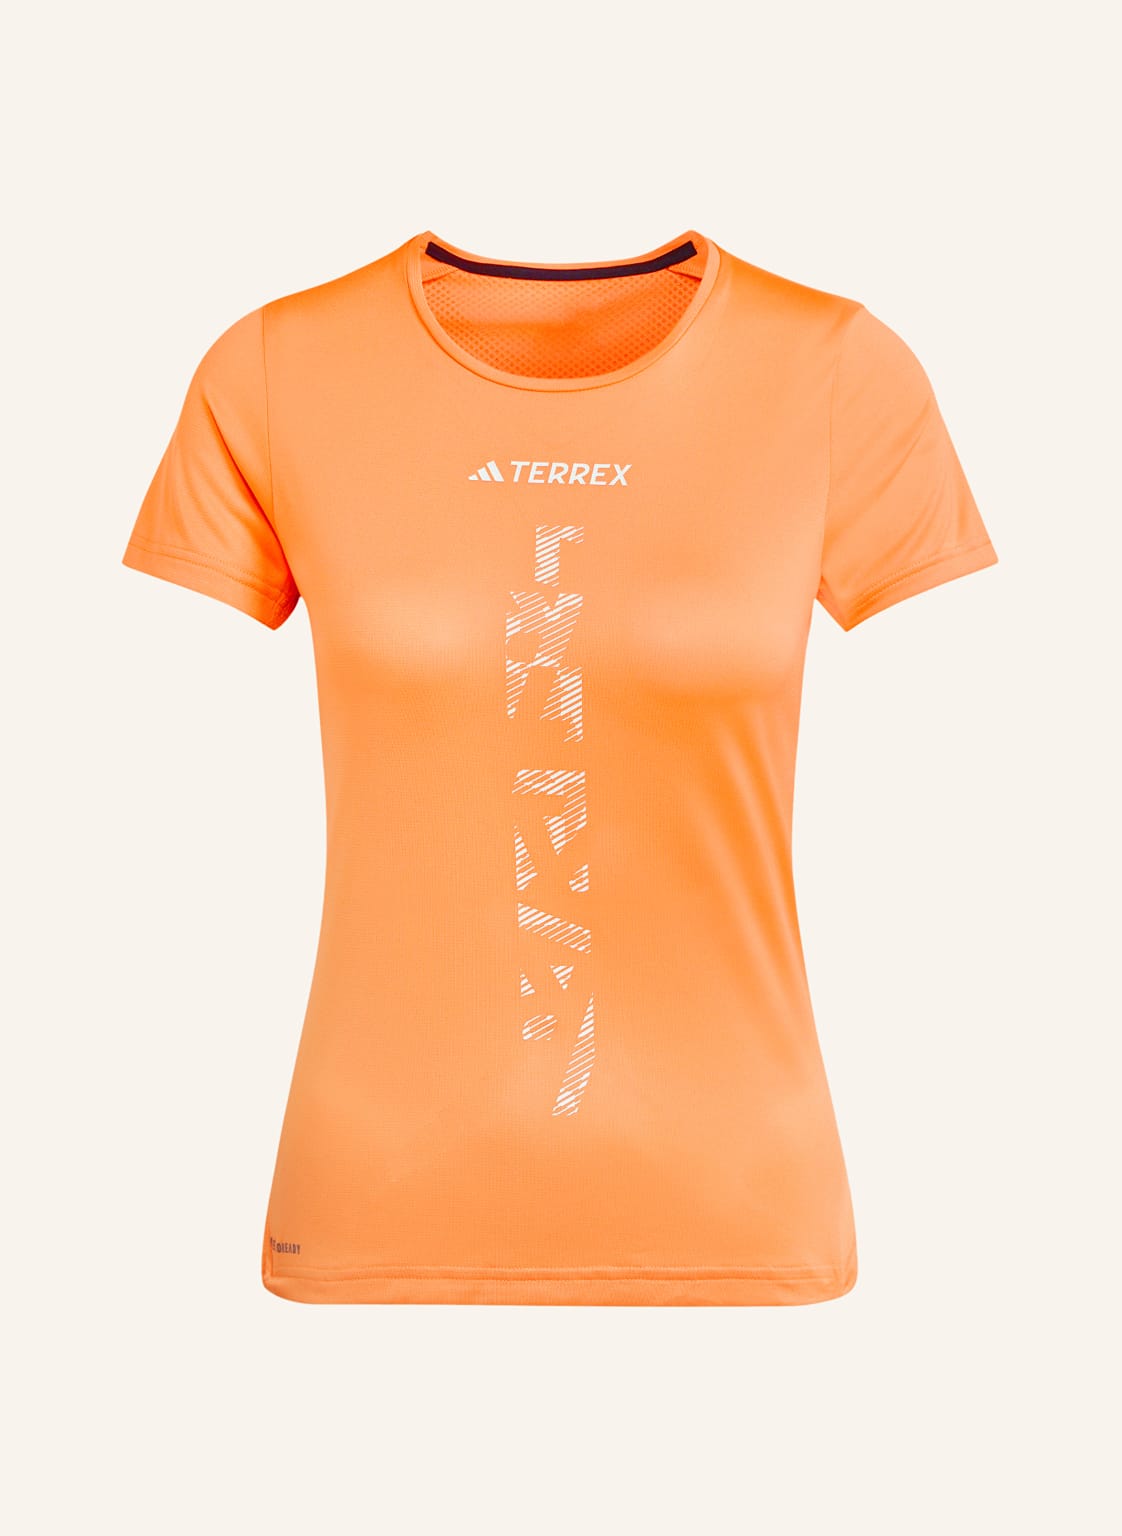 Adidas Laufshirt Terrex Agravic orange von Adidas